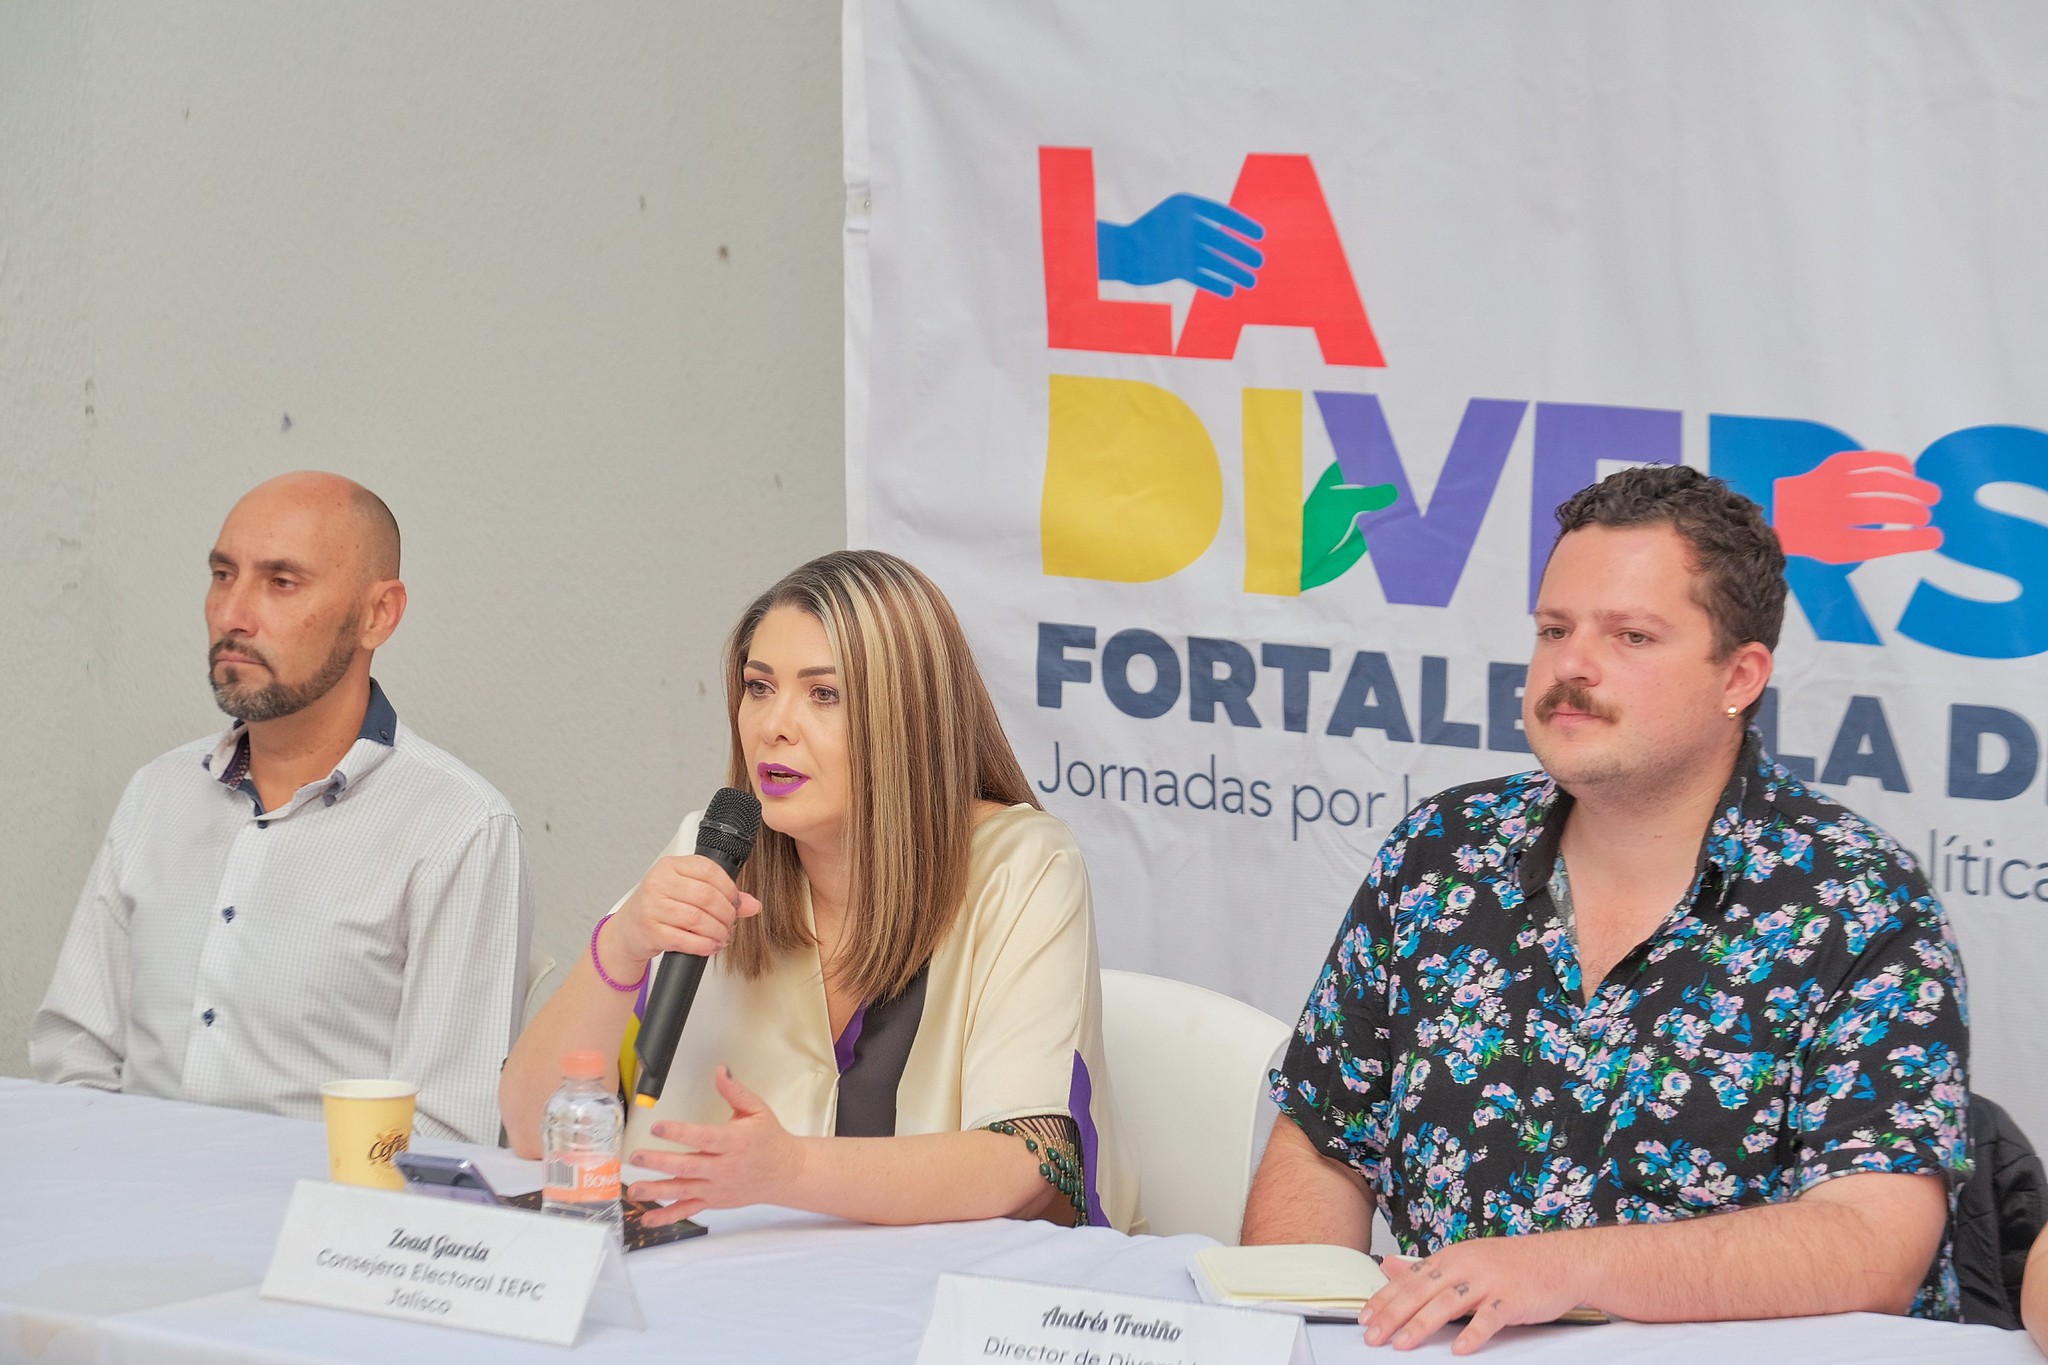 Gobierno de Jalisco lanza programa “La diversidad fortalece la democracia: Jornadas por la participación política de las personas de las personas LGBTIQ+”